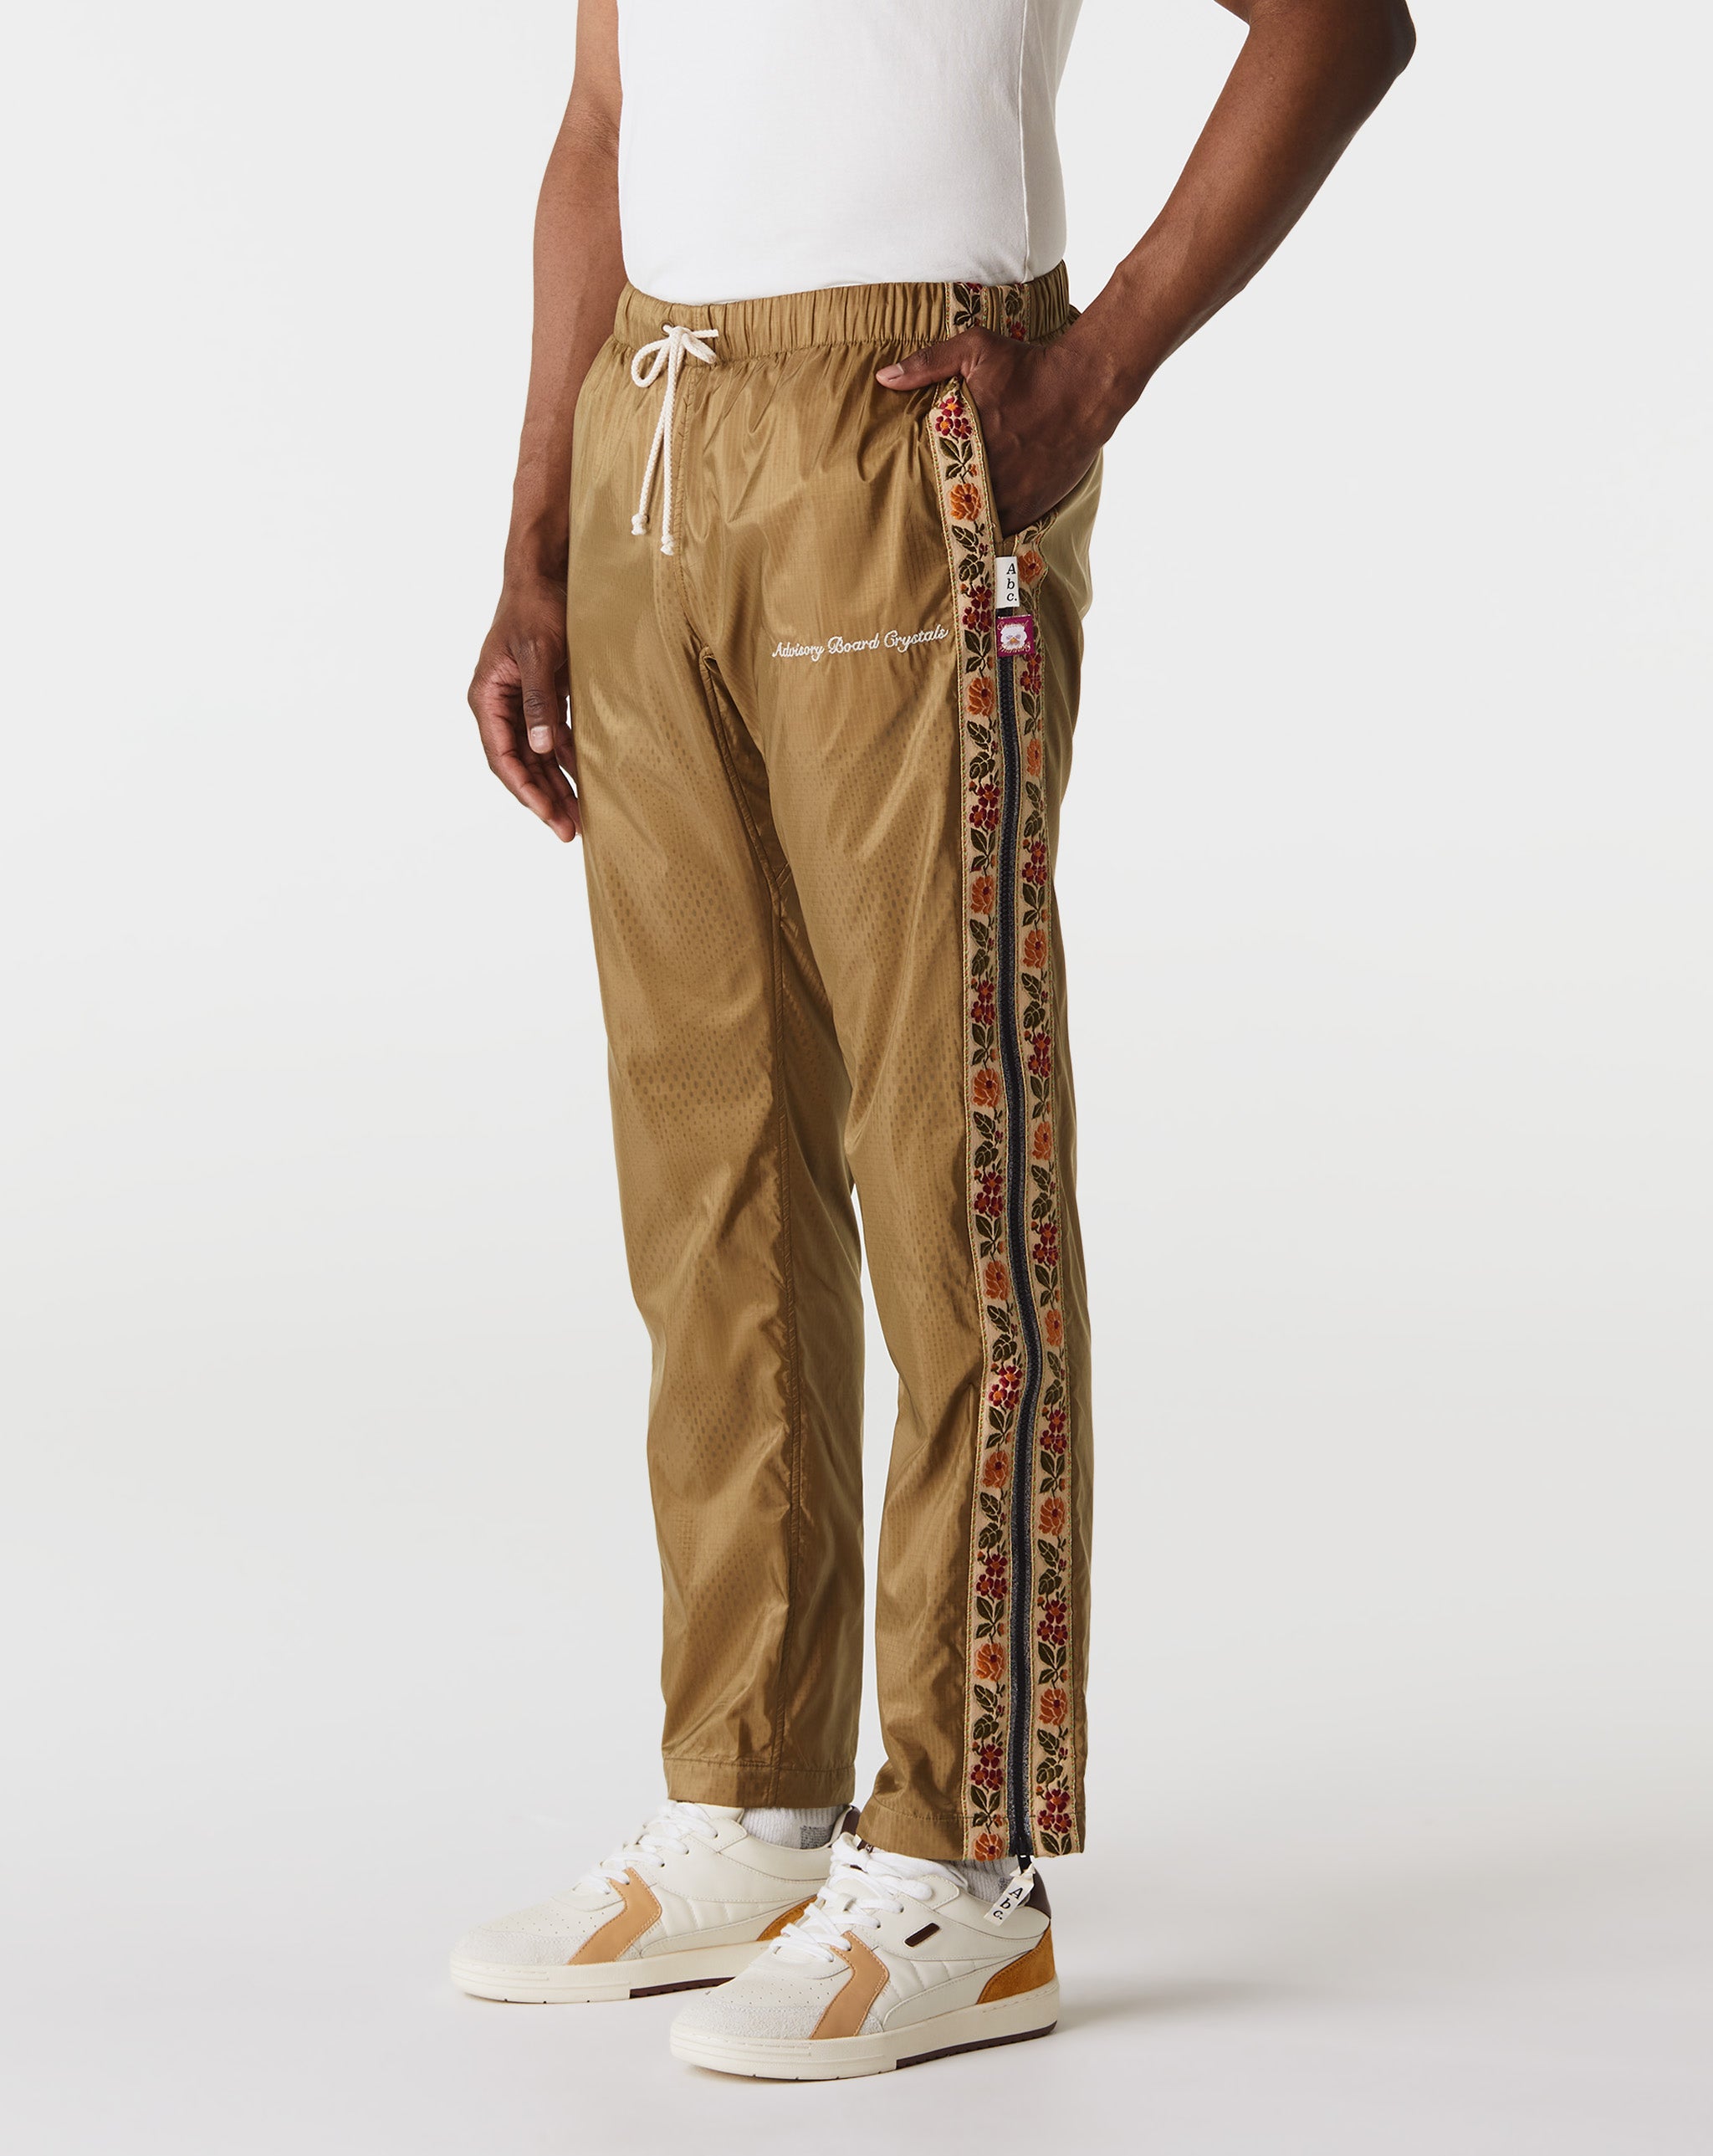 Jeans slim Vêtements Taille 16 ans Arts Track Ripstop Pants  - Cheap Urlfreeze Jordan outlet